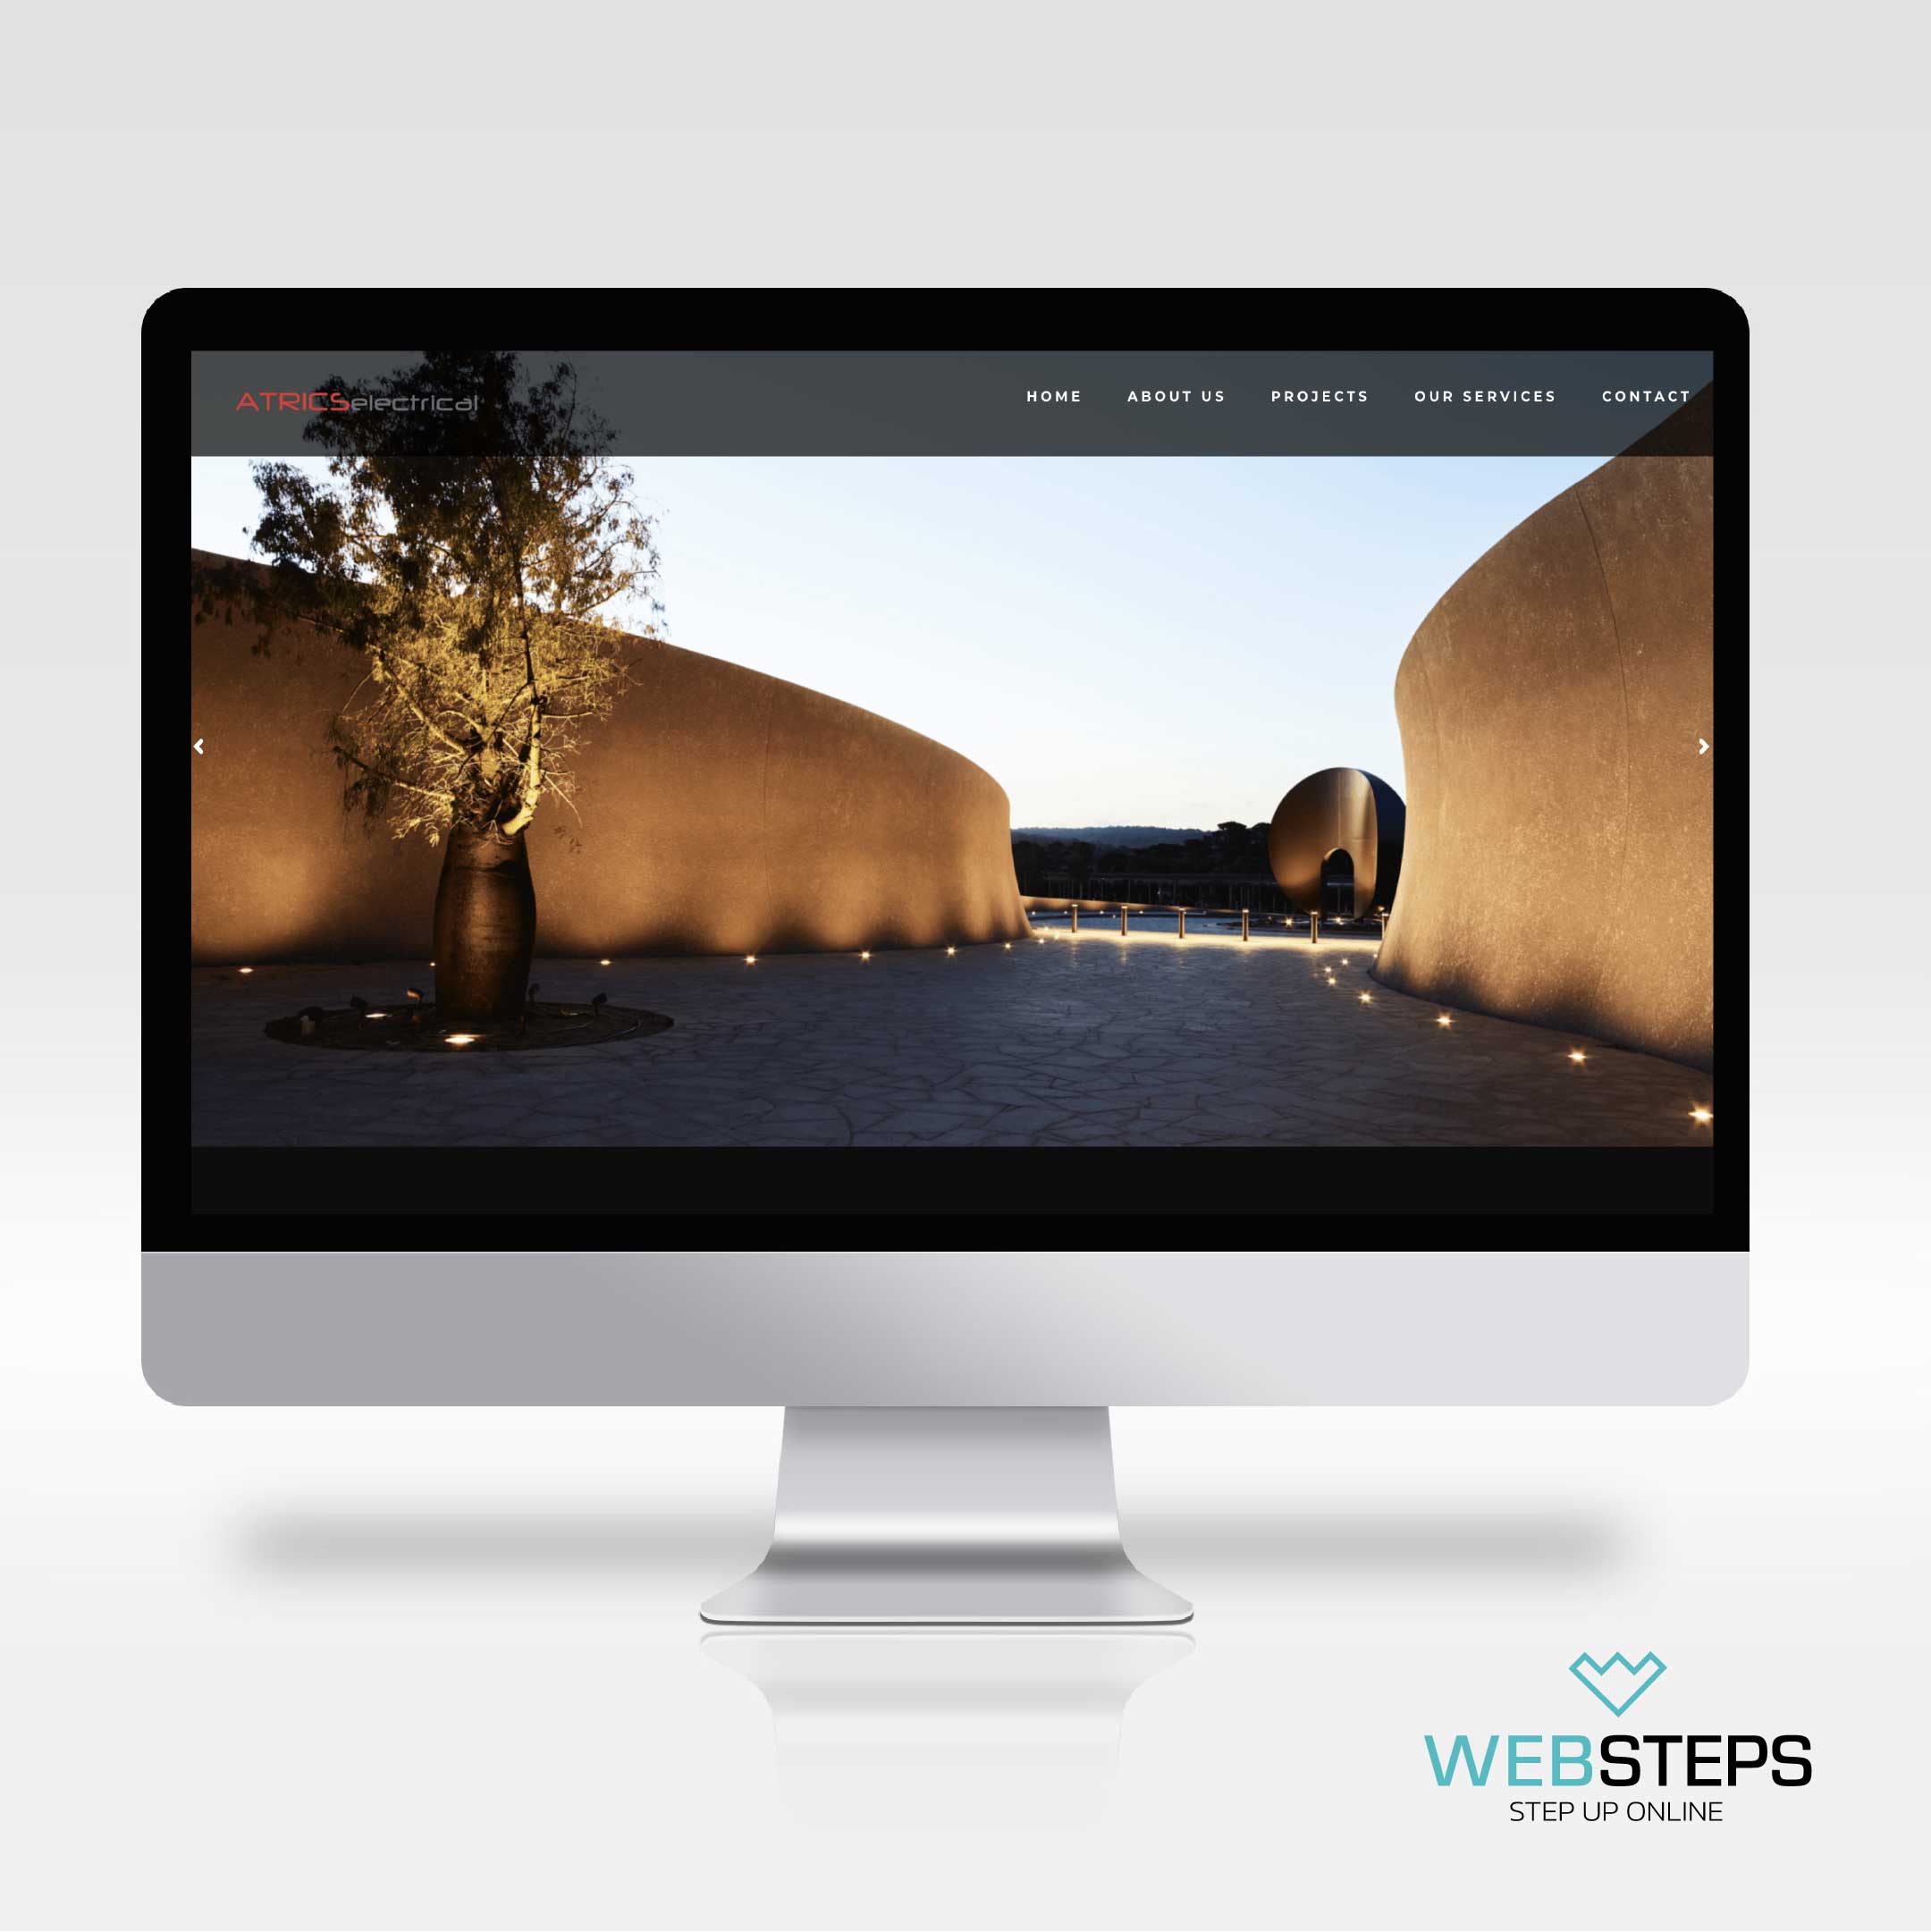 websteps-atrics-website